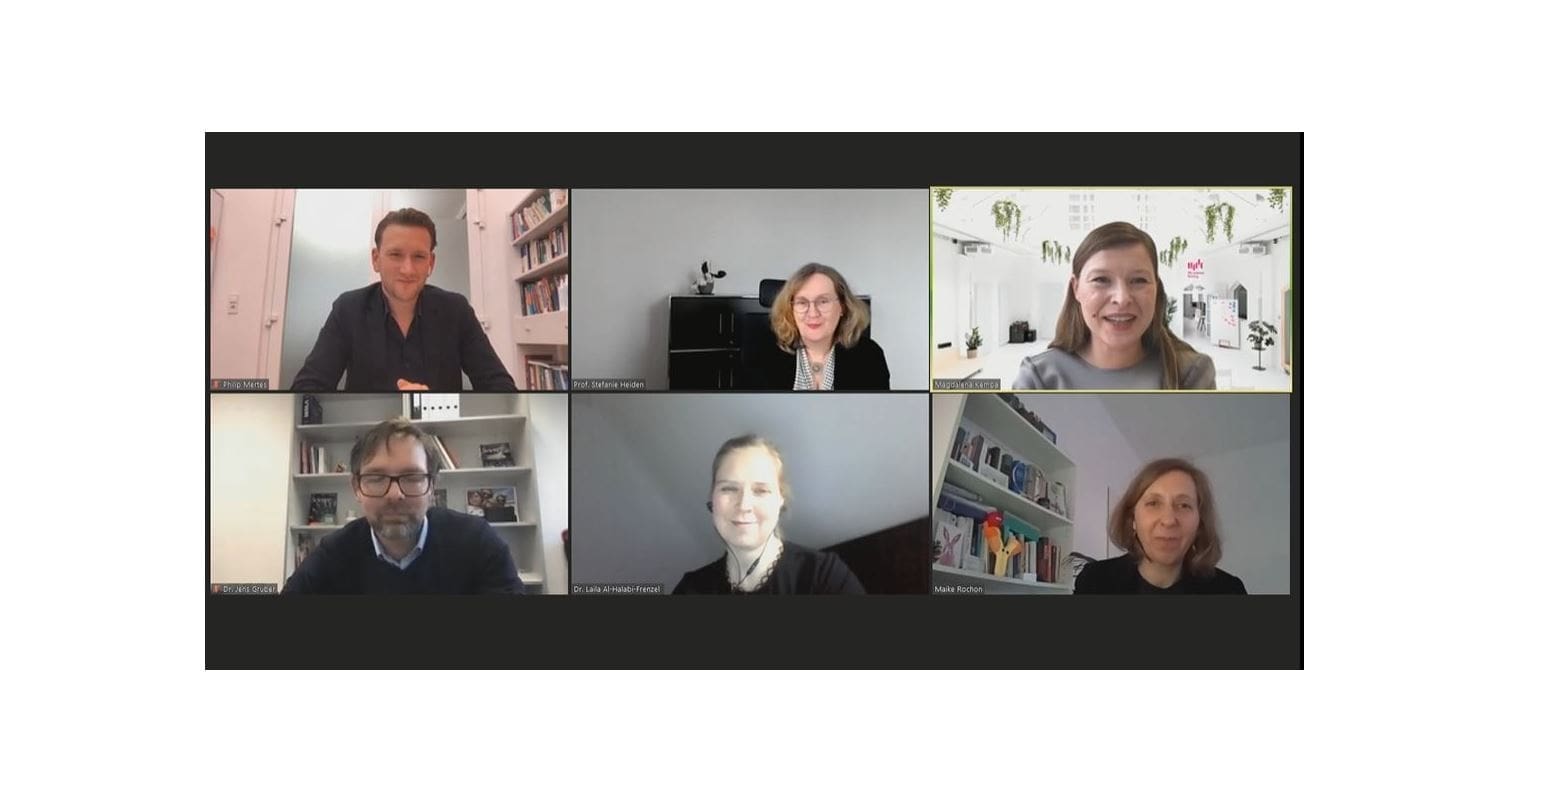 Virtuelle Podiumsdiskussion mit sechs Teilnehmern im Videokonferenzformat